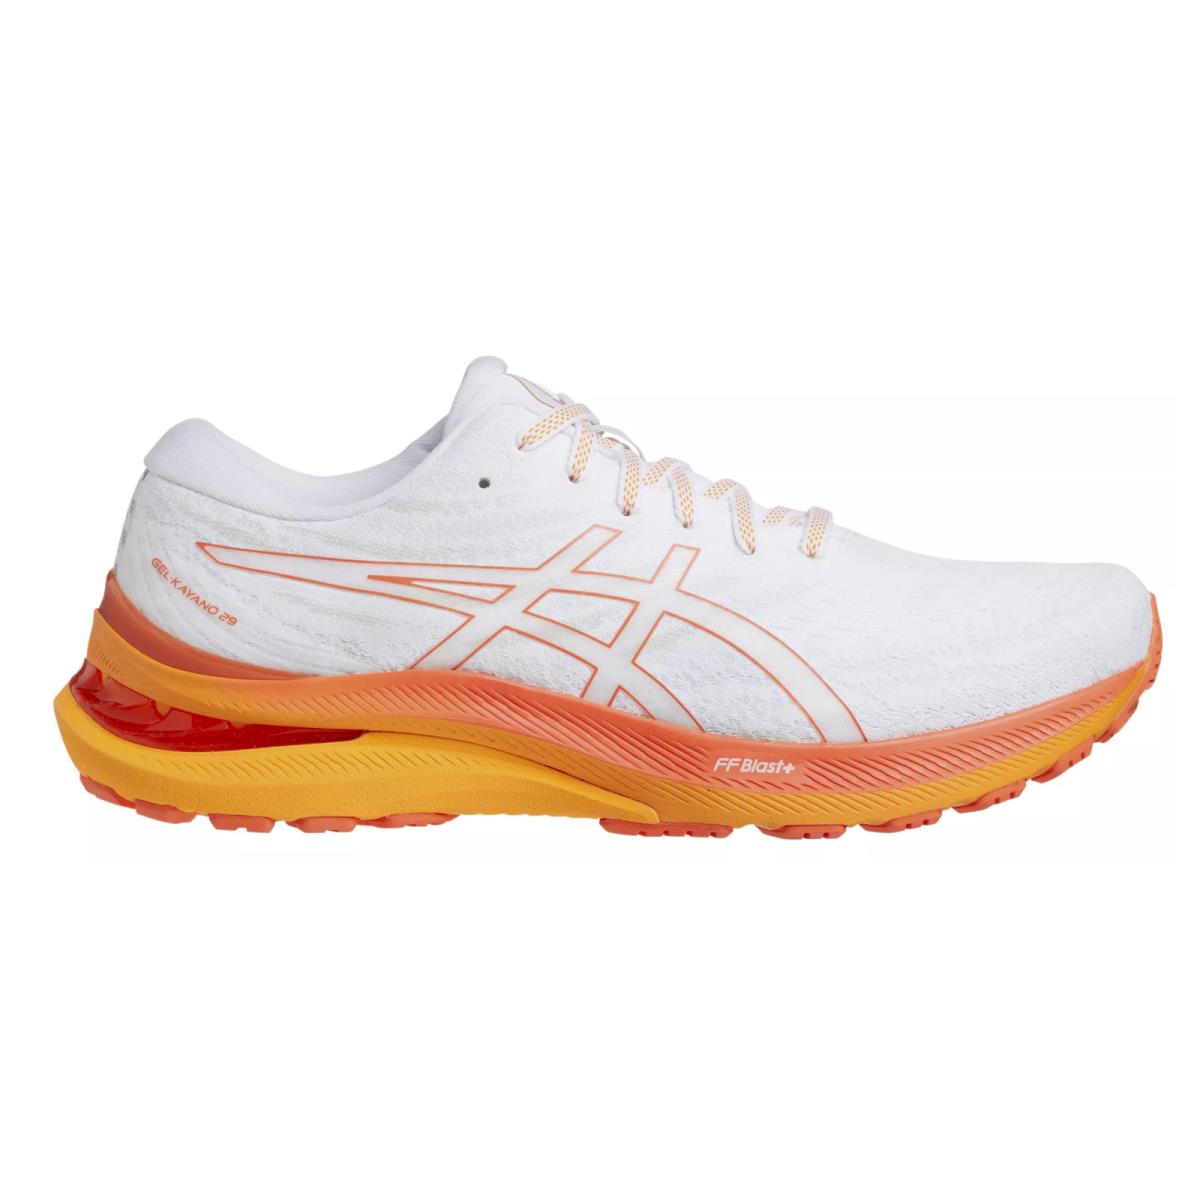 Asics Men`s Gel-kayano 29 Running Shoes White and Orange Size 9.5